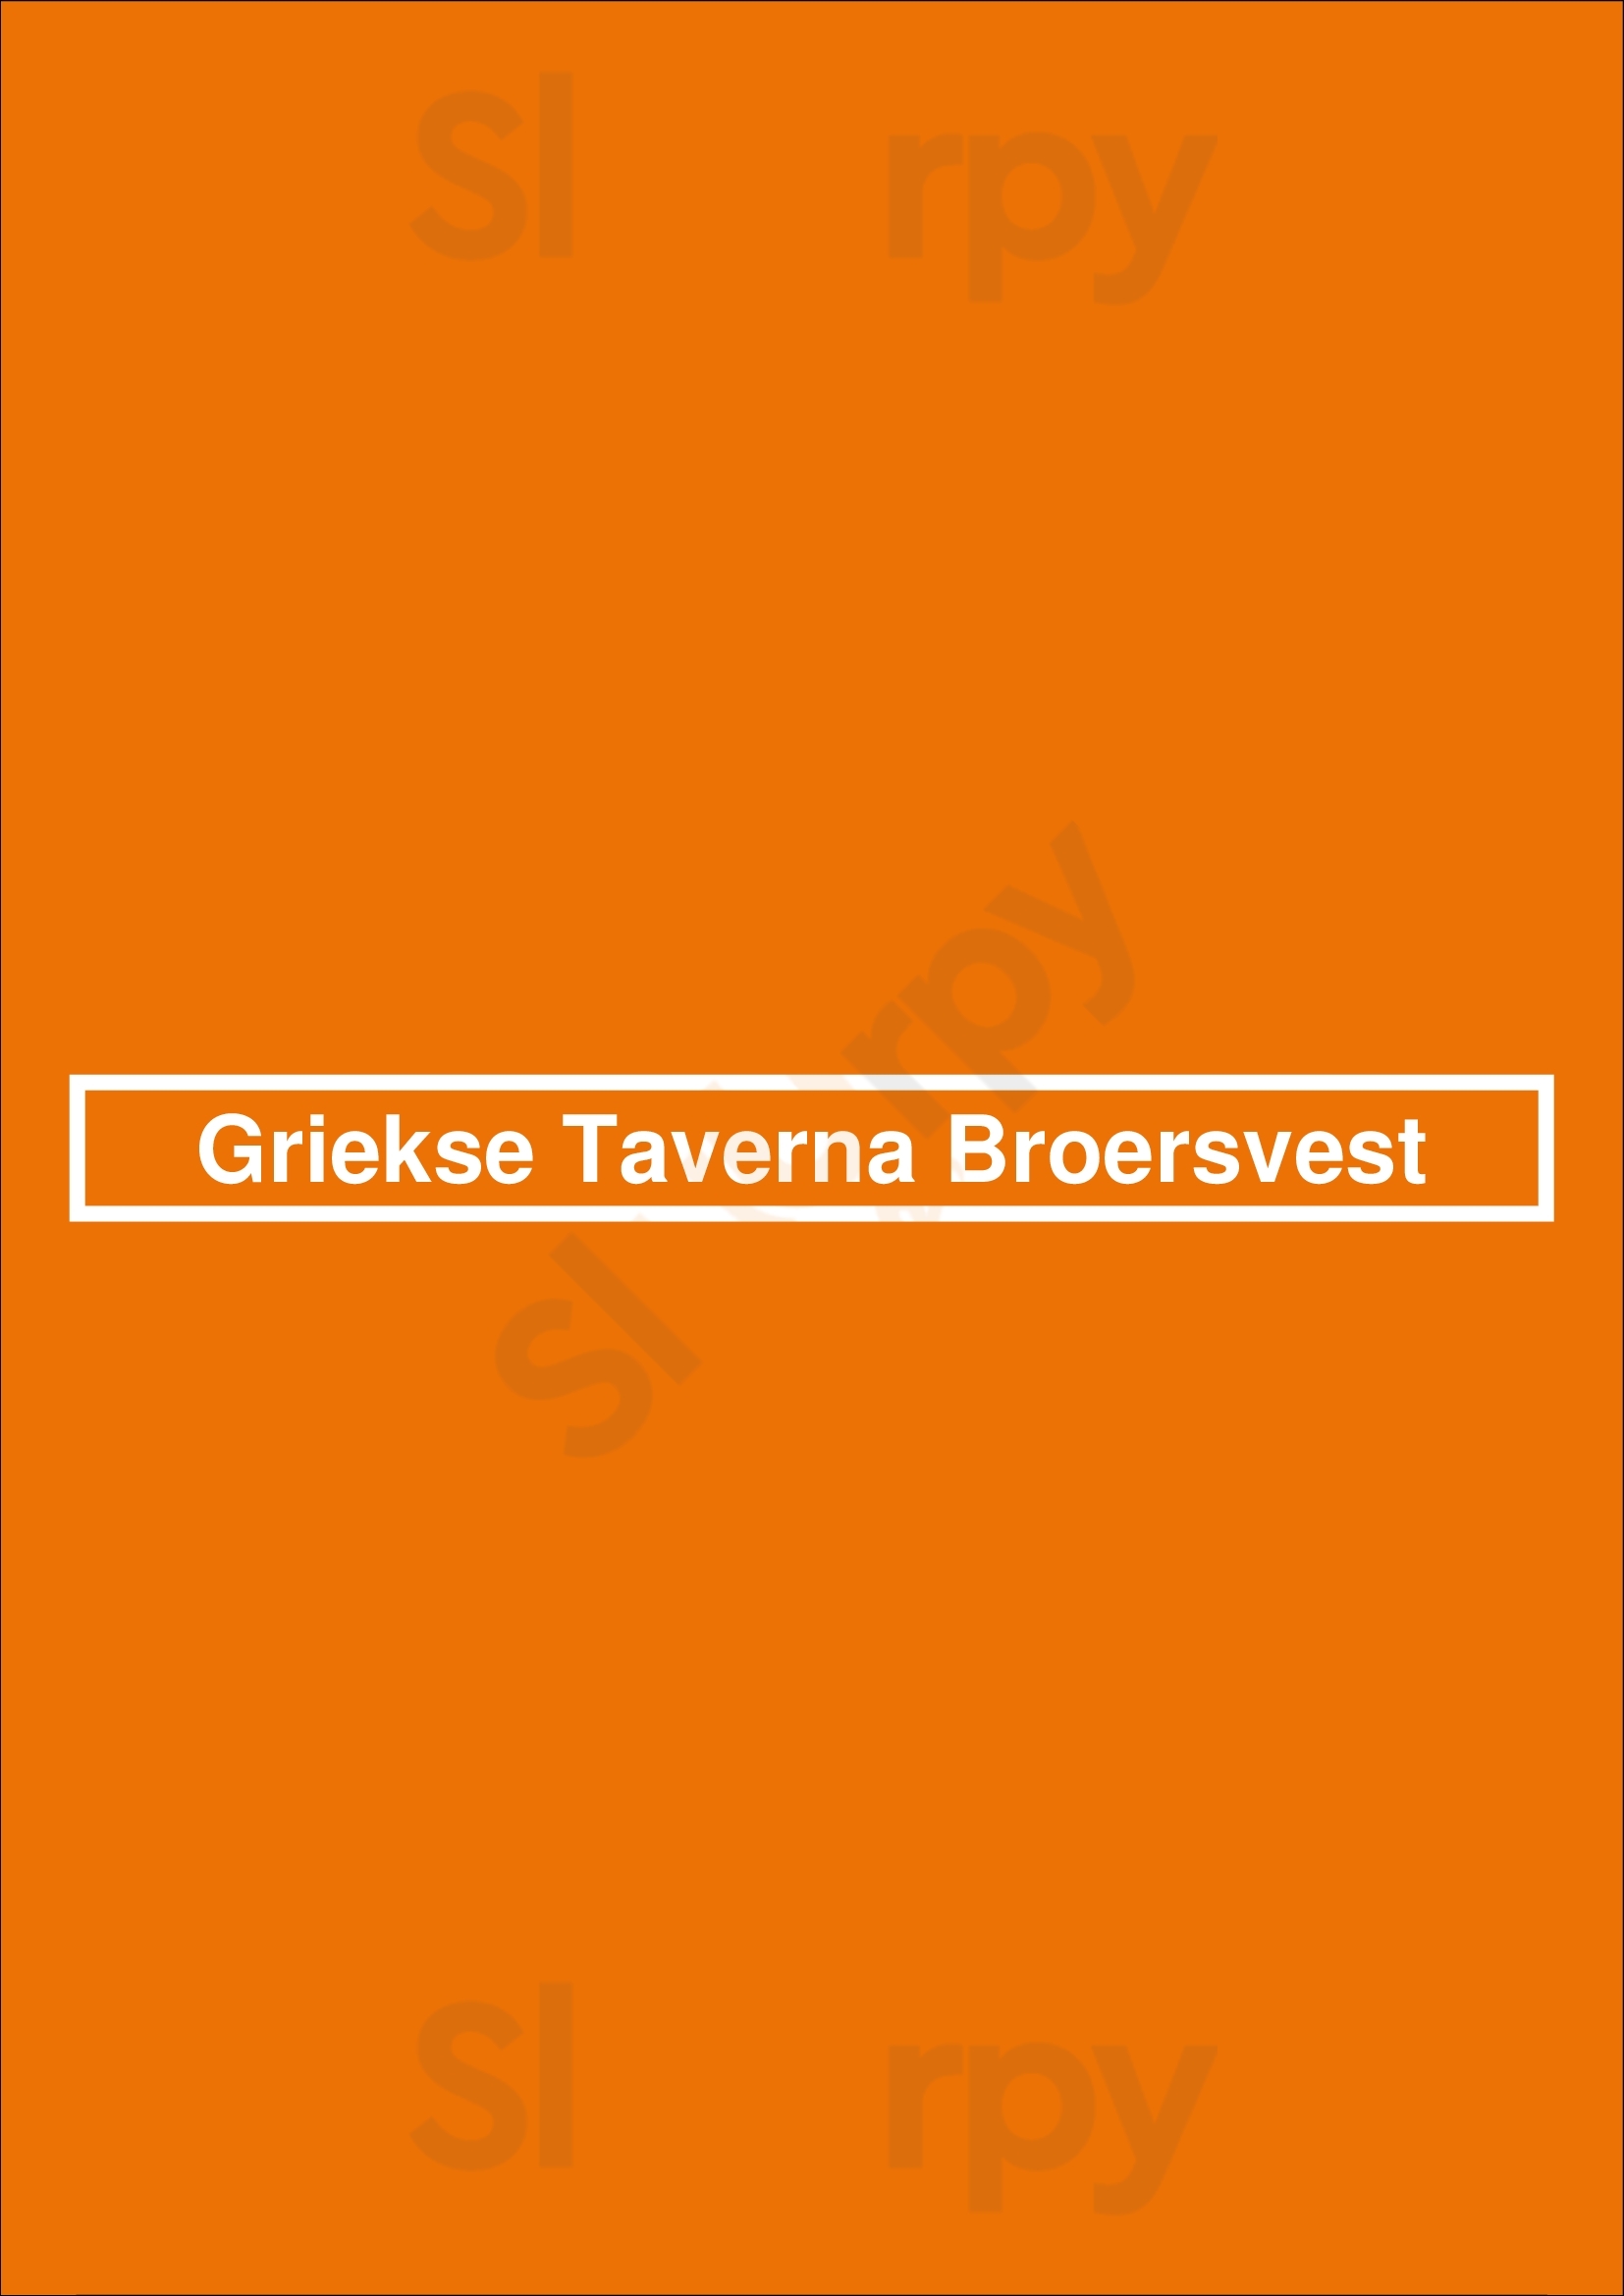 Griekse Taverna Broersvest Schiedam Menu - 1